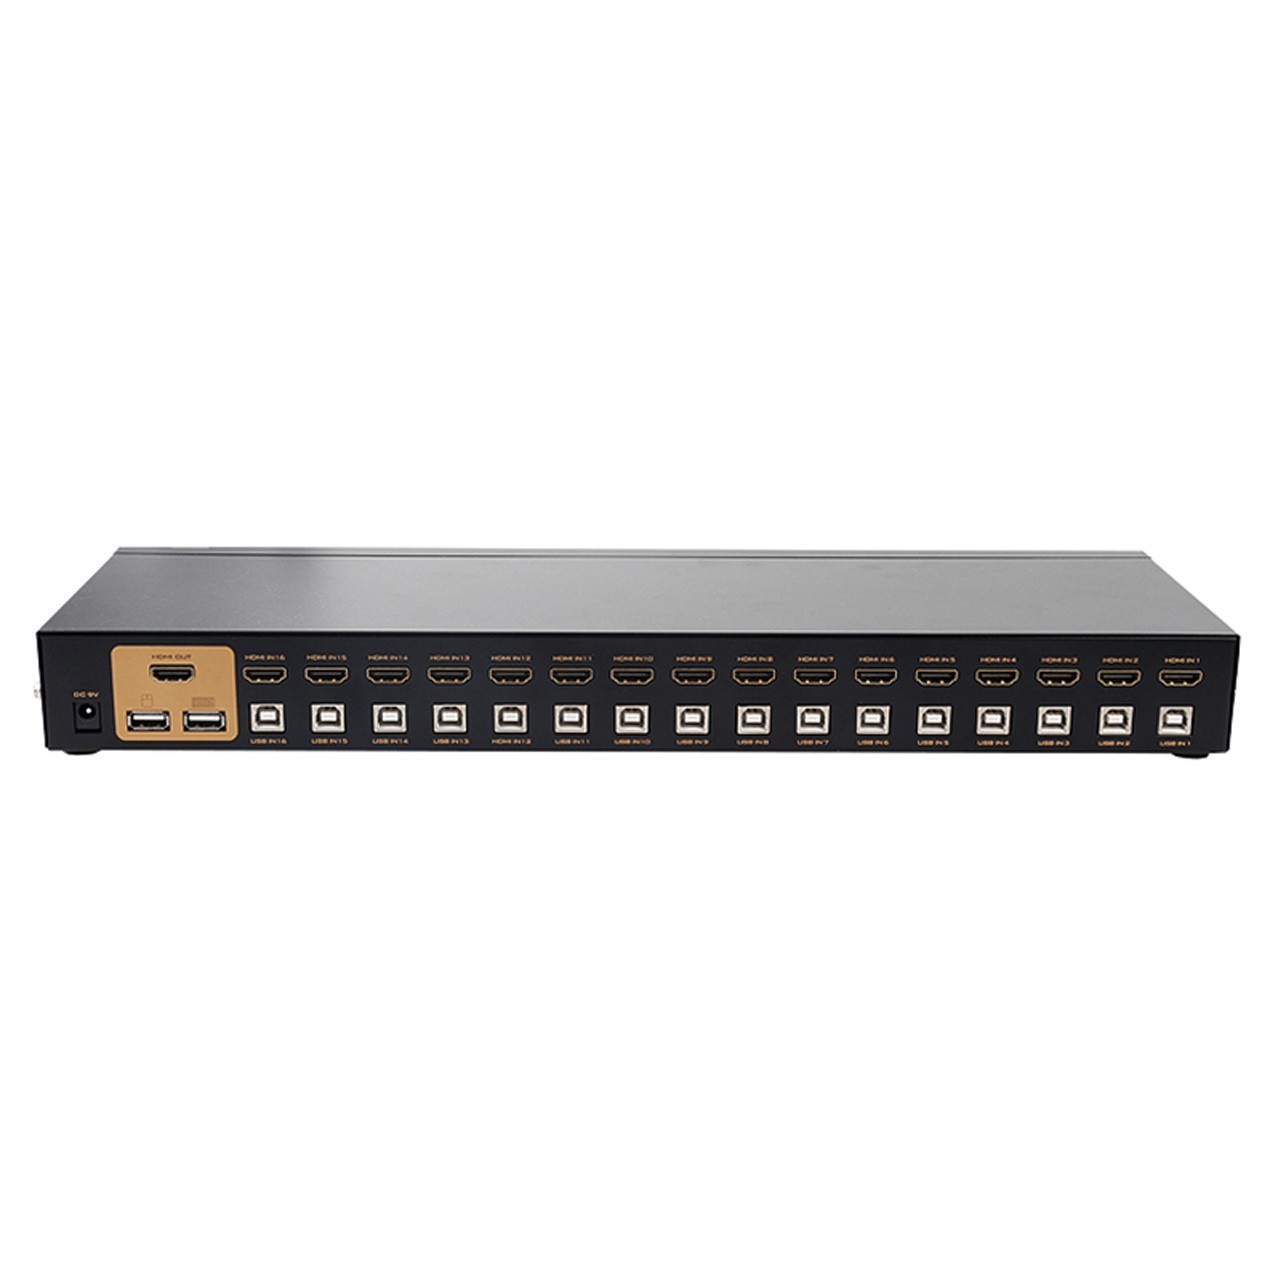 KVM USB HDMI اتوماتیک 16 پورت حرفه ای مدل MT-2116HL به همراه 16 کابل